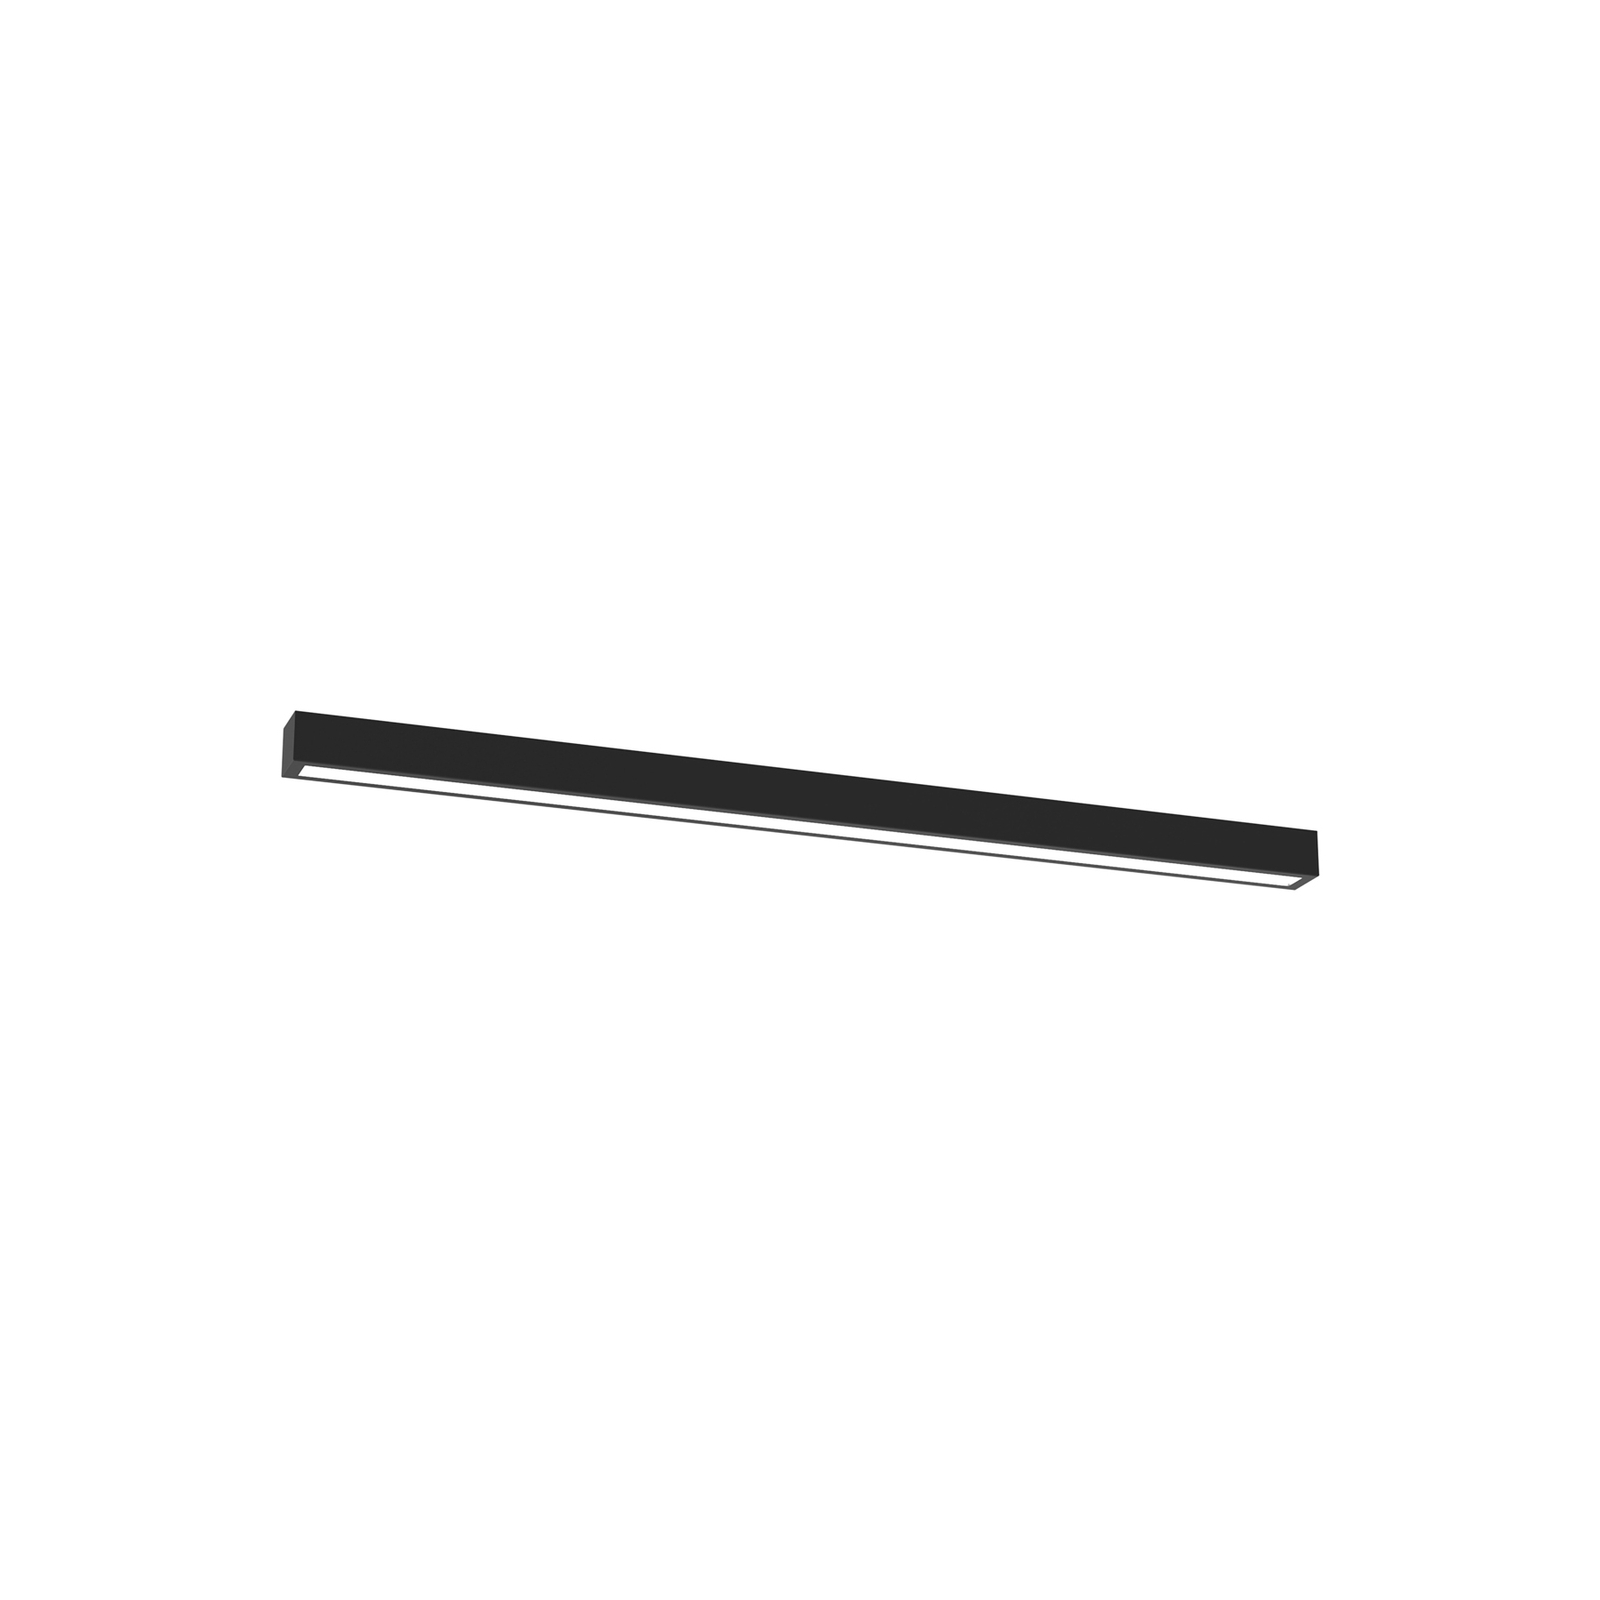 Taklampa Lungo, svart, längd 124 cm